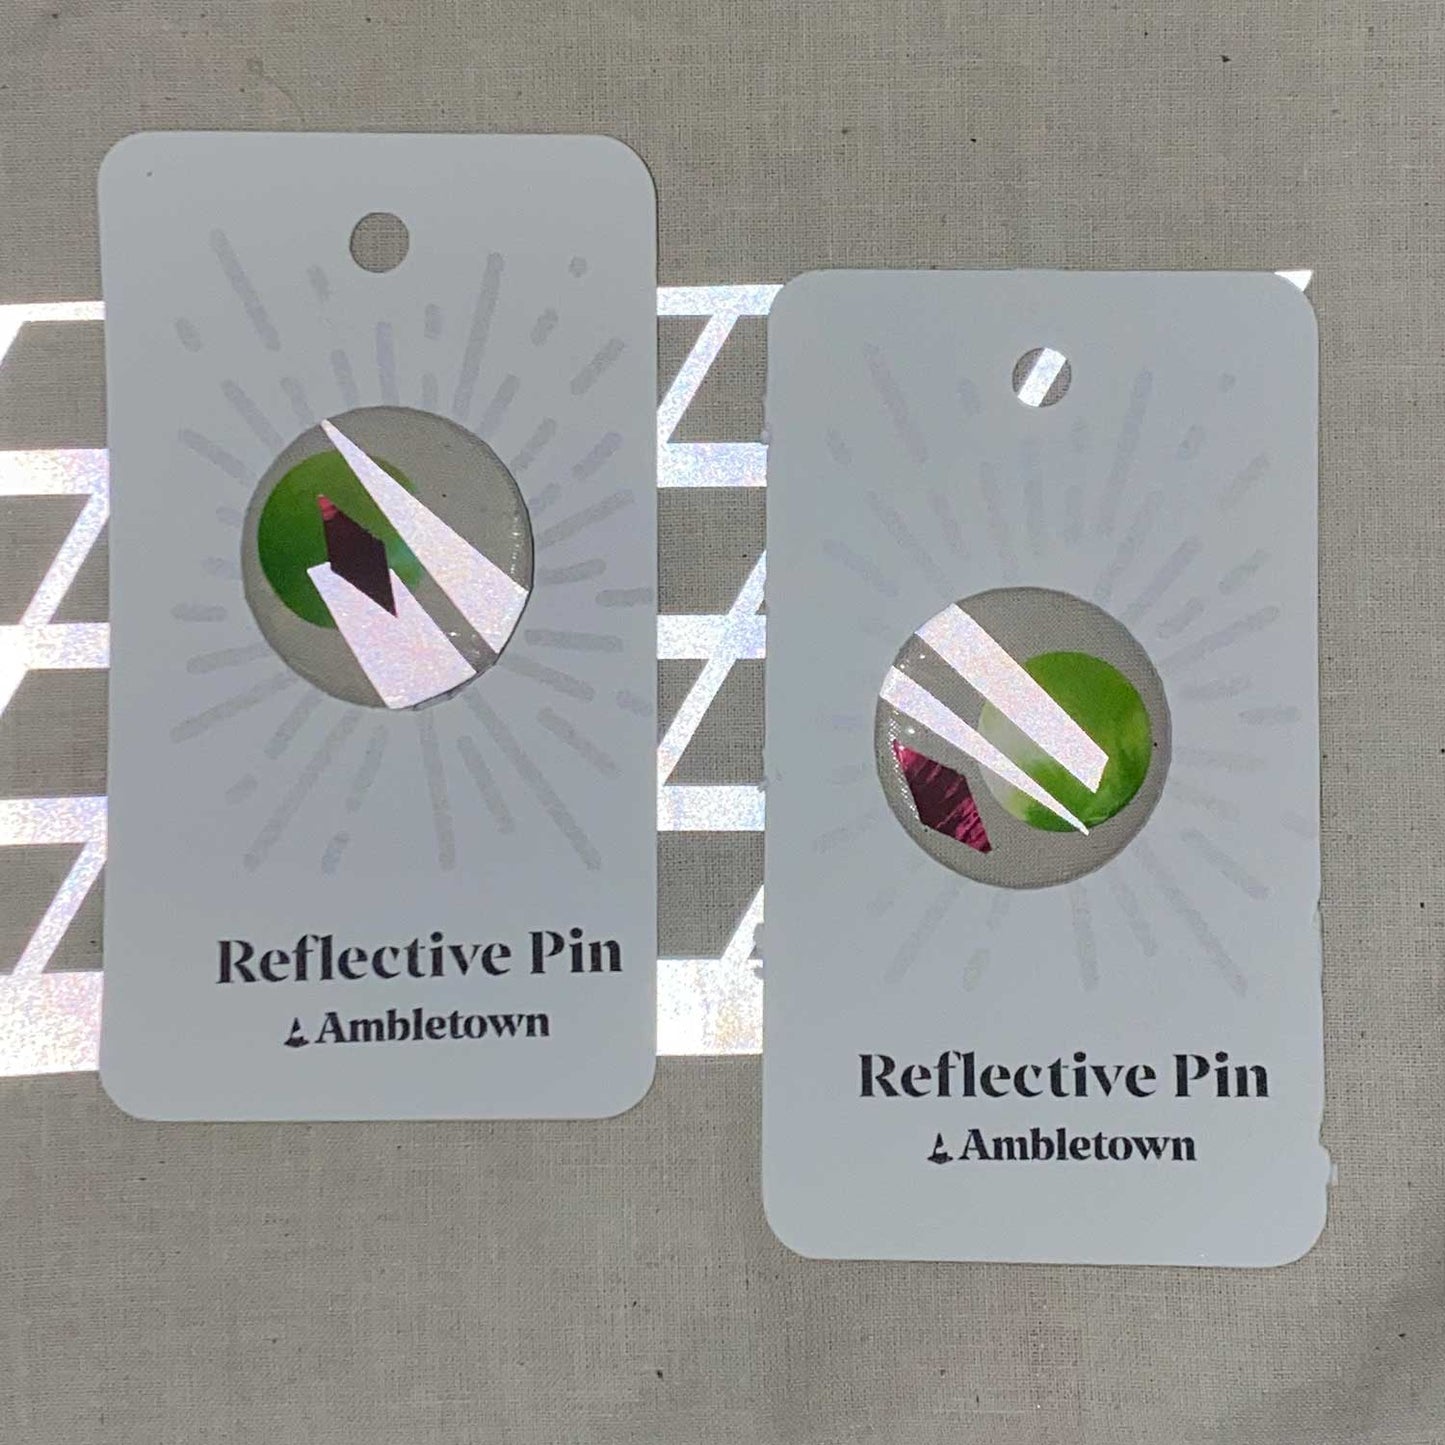 Reflective Pin